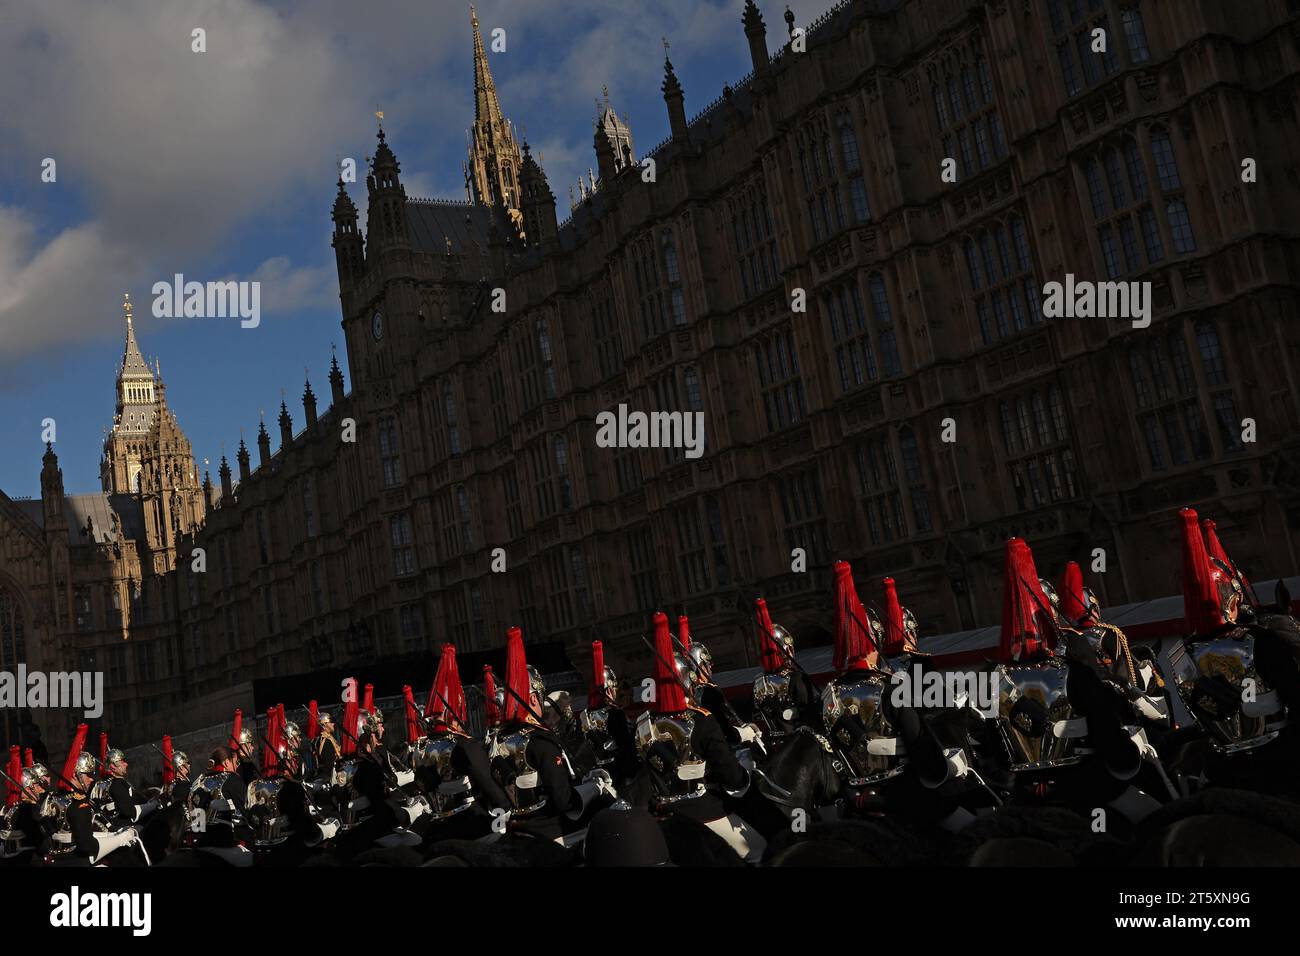 Mitglieder der Blues and Royals, einer Einheit der Household Cavalry, kommen bei der Prozession im Palace of Westminster vor der Parlamentseröffnung im House of Lords in London an. Bilddatum: Dienstag, 7. November 2023. Stockfoto